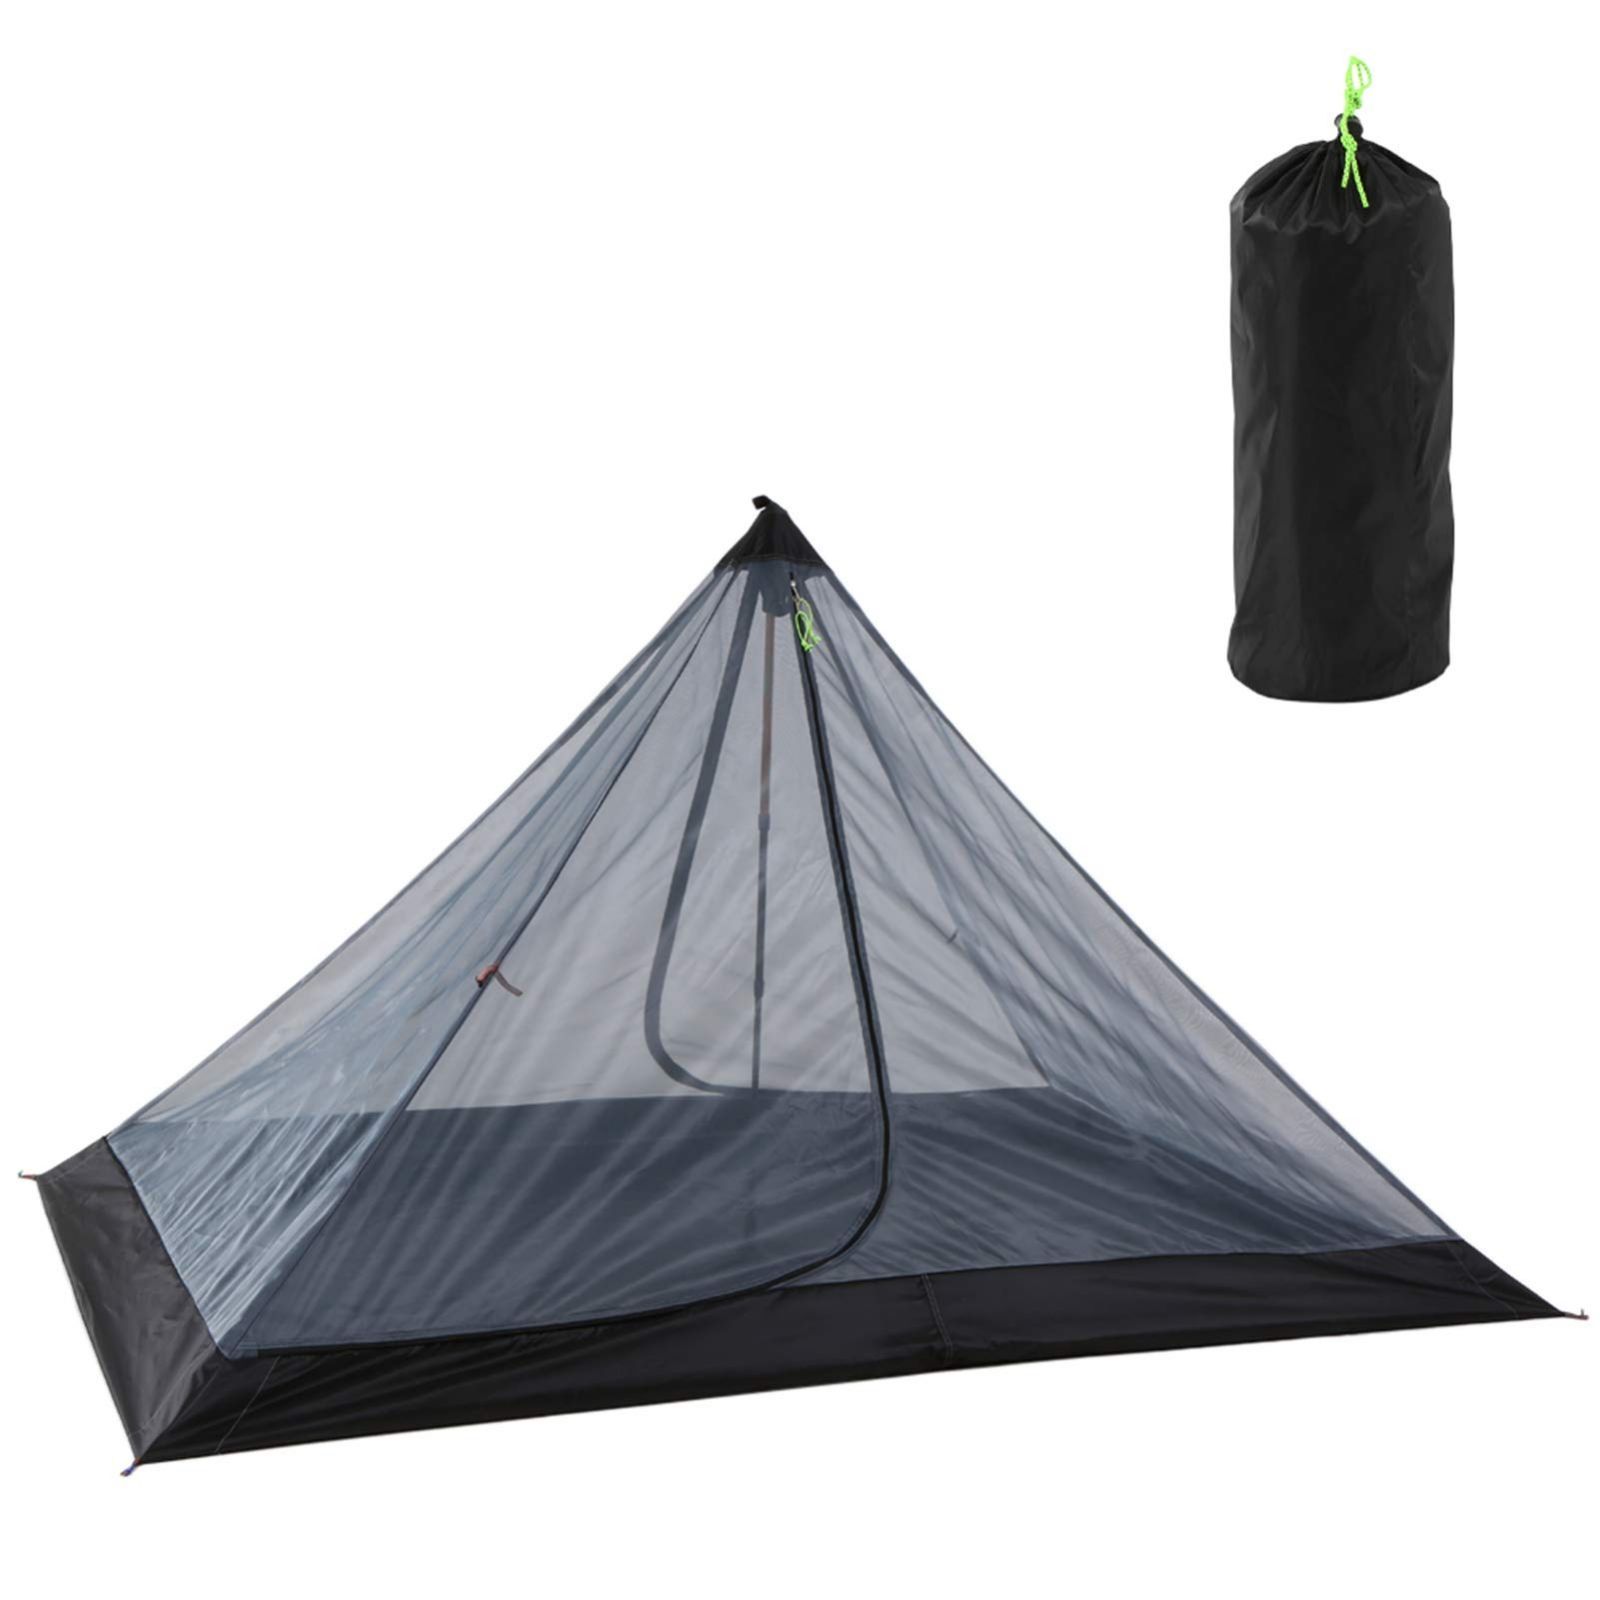 蚊帳 モスキートネット アウトドア 超軽量 メッシュテント ネットテント 1-2人用 ポータブル 折りたたみ式 キャンプテント - メルカリ